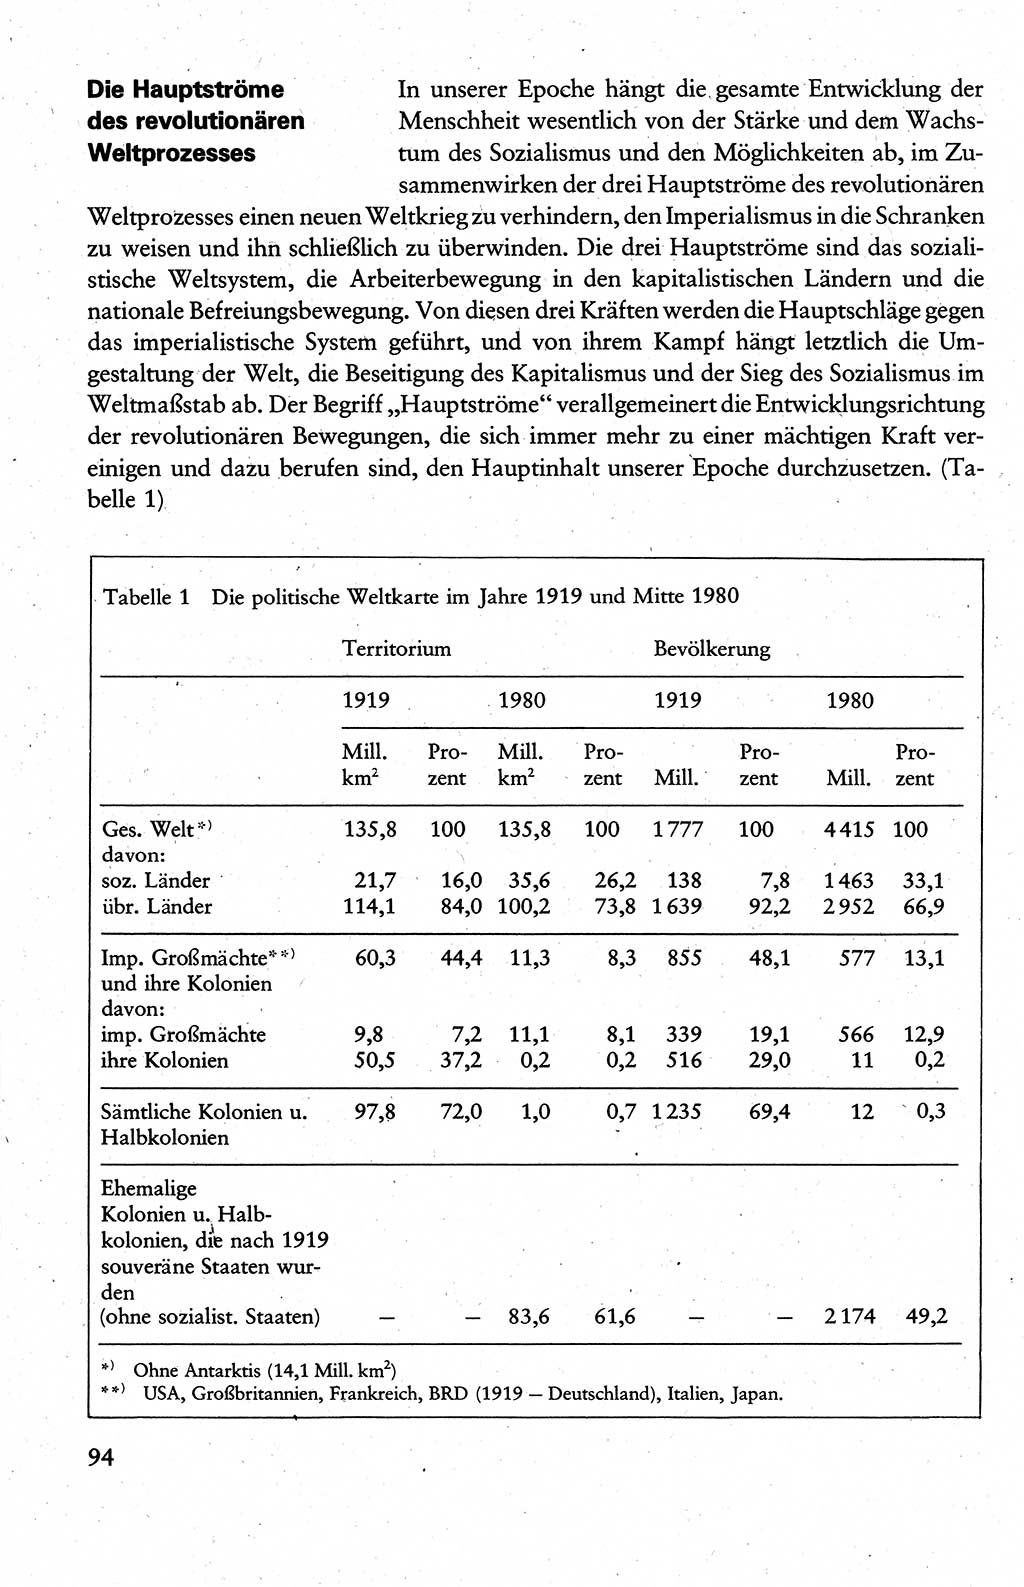 Wissenschaftlicher Kommunismus [Deutsche Demokratische Republik (DDR)], Lehrbuch für das marxistisch-leninistische Grundlagenstudium 1983, Seite 94 (Wiss. Komm. DDR Lb. 1983, S. 94)